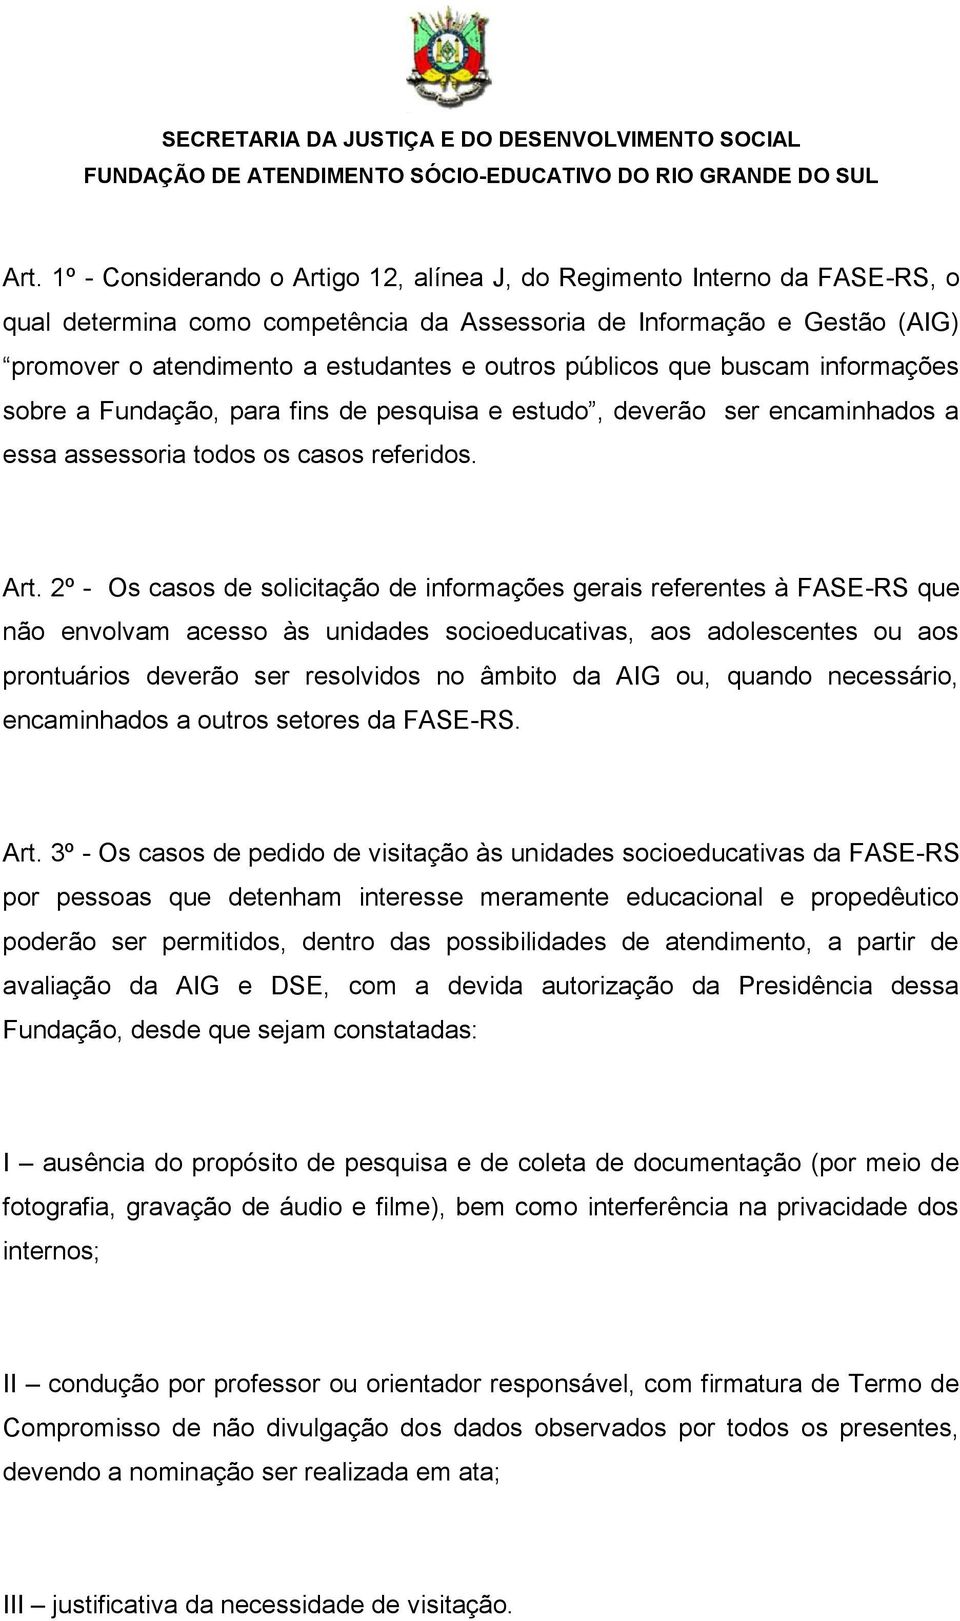 2º - Os casos de solicitação de informações gerais referentes à FASE-RS que não envolvam acesso às unidades socioeducativas, aos adolescentes ou aos prontuários deverão ser resolvidos no âmbito da